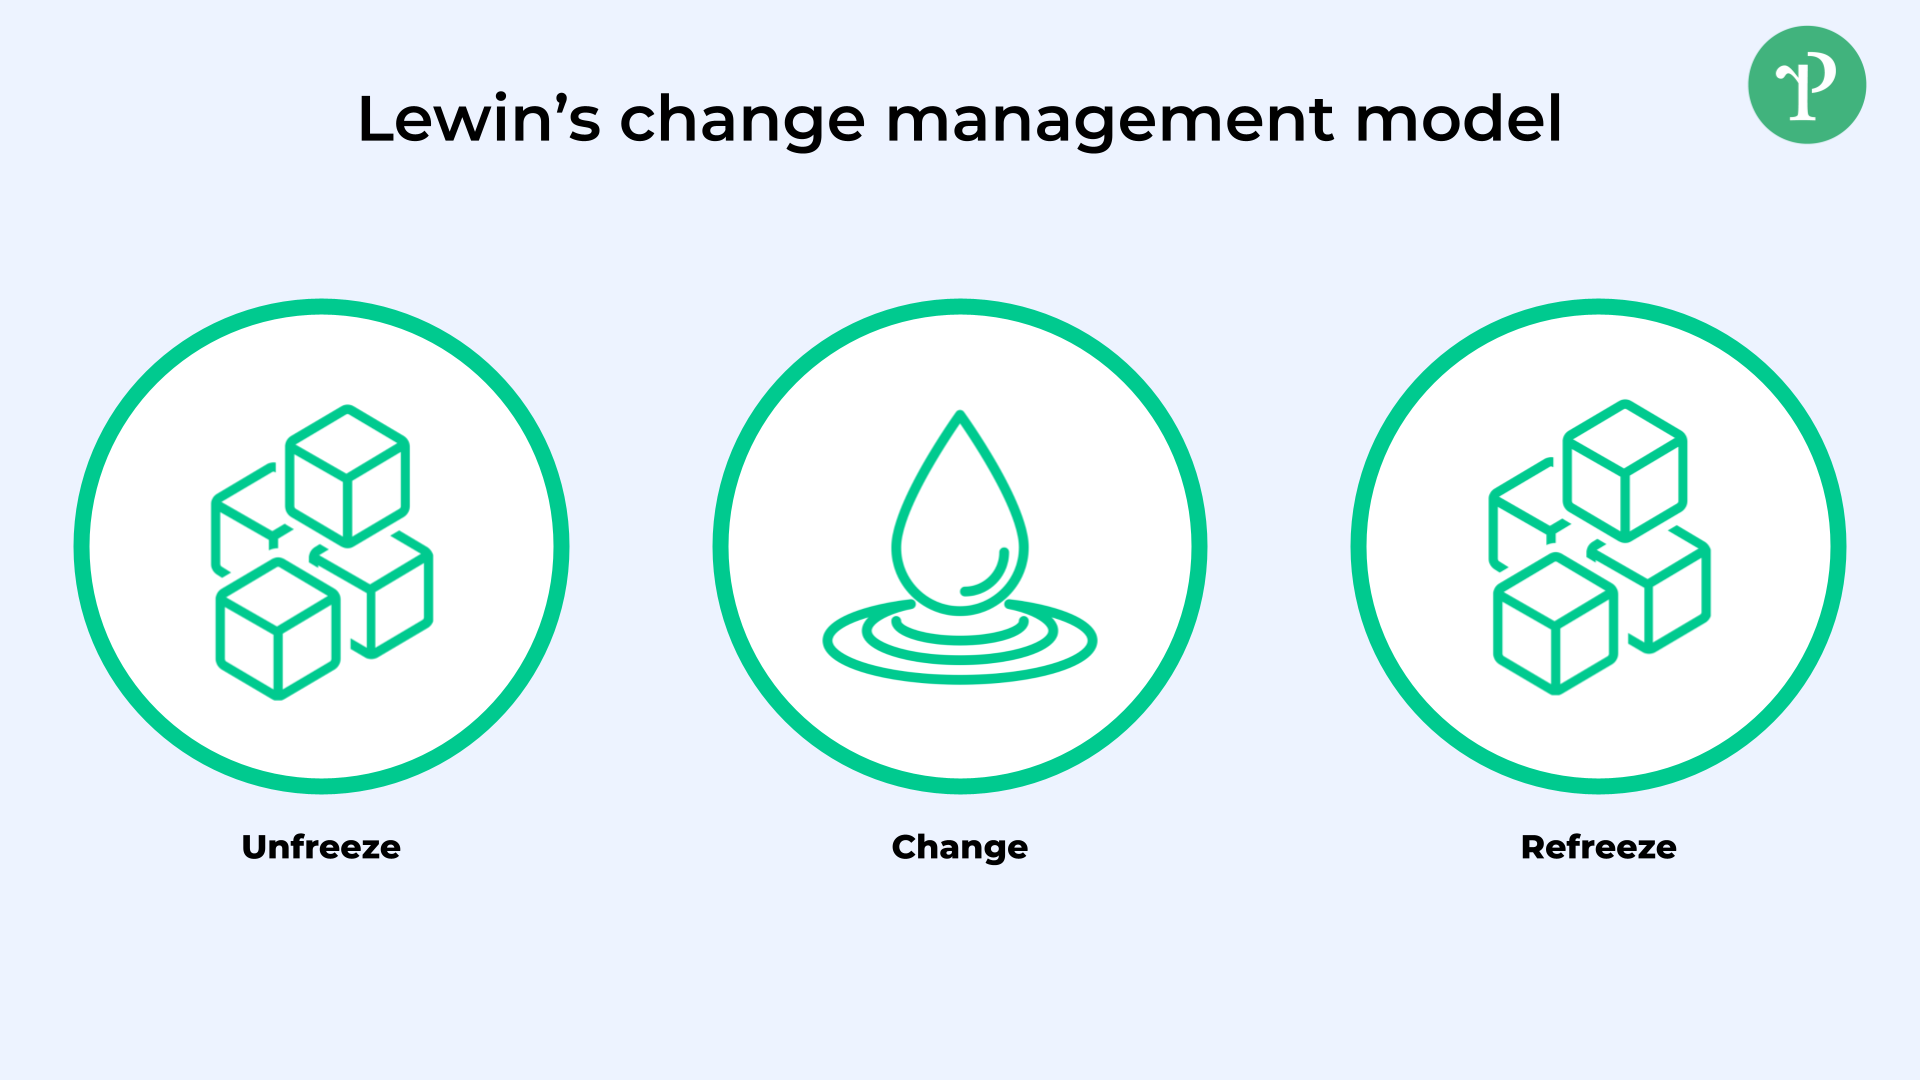 Modelo de gestión del cambio de Lewin | Right People Group